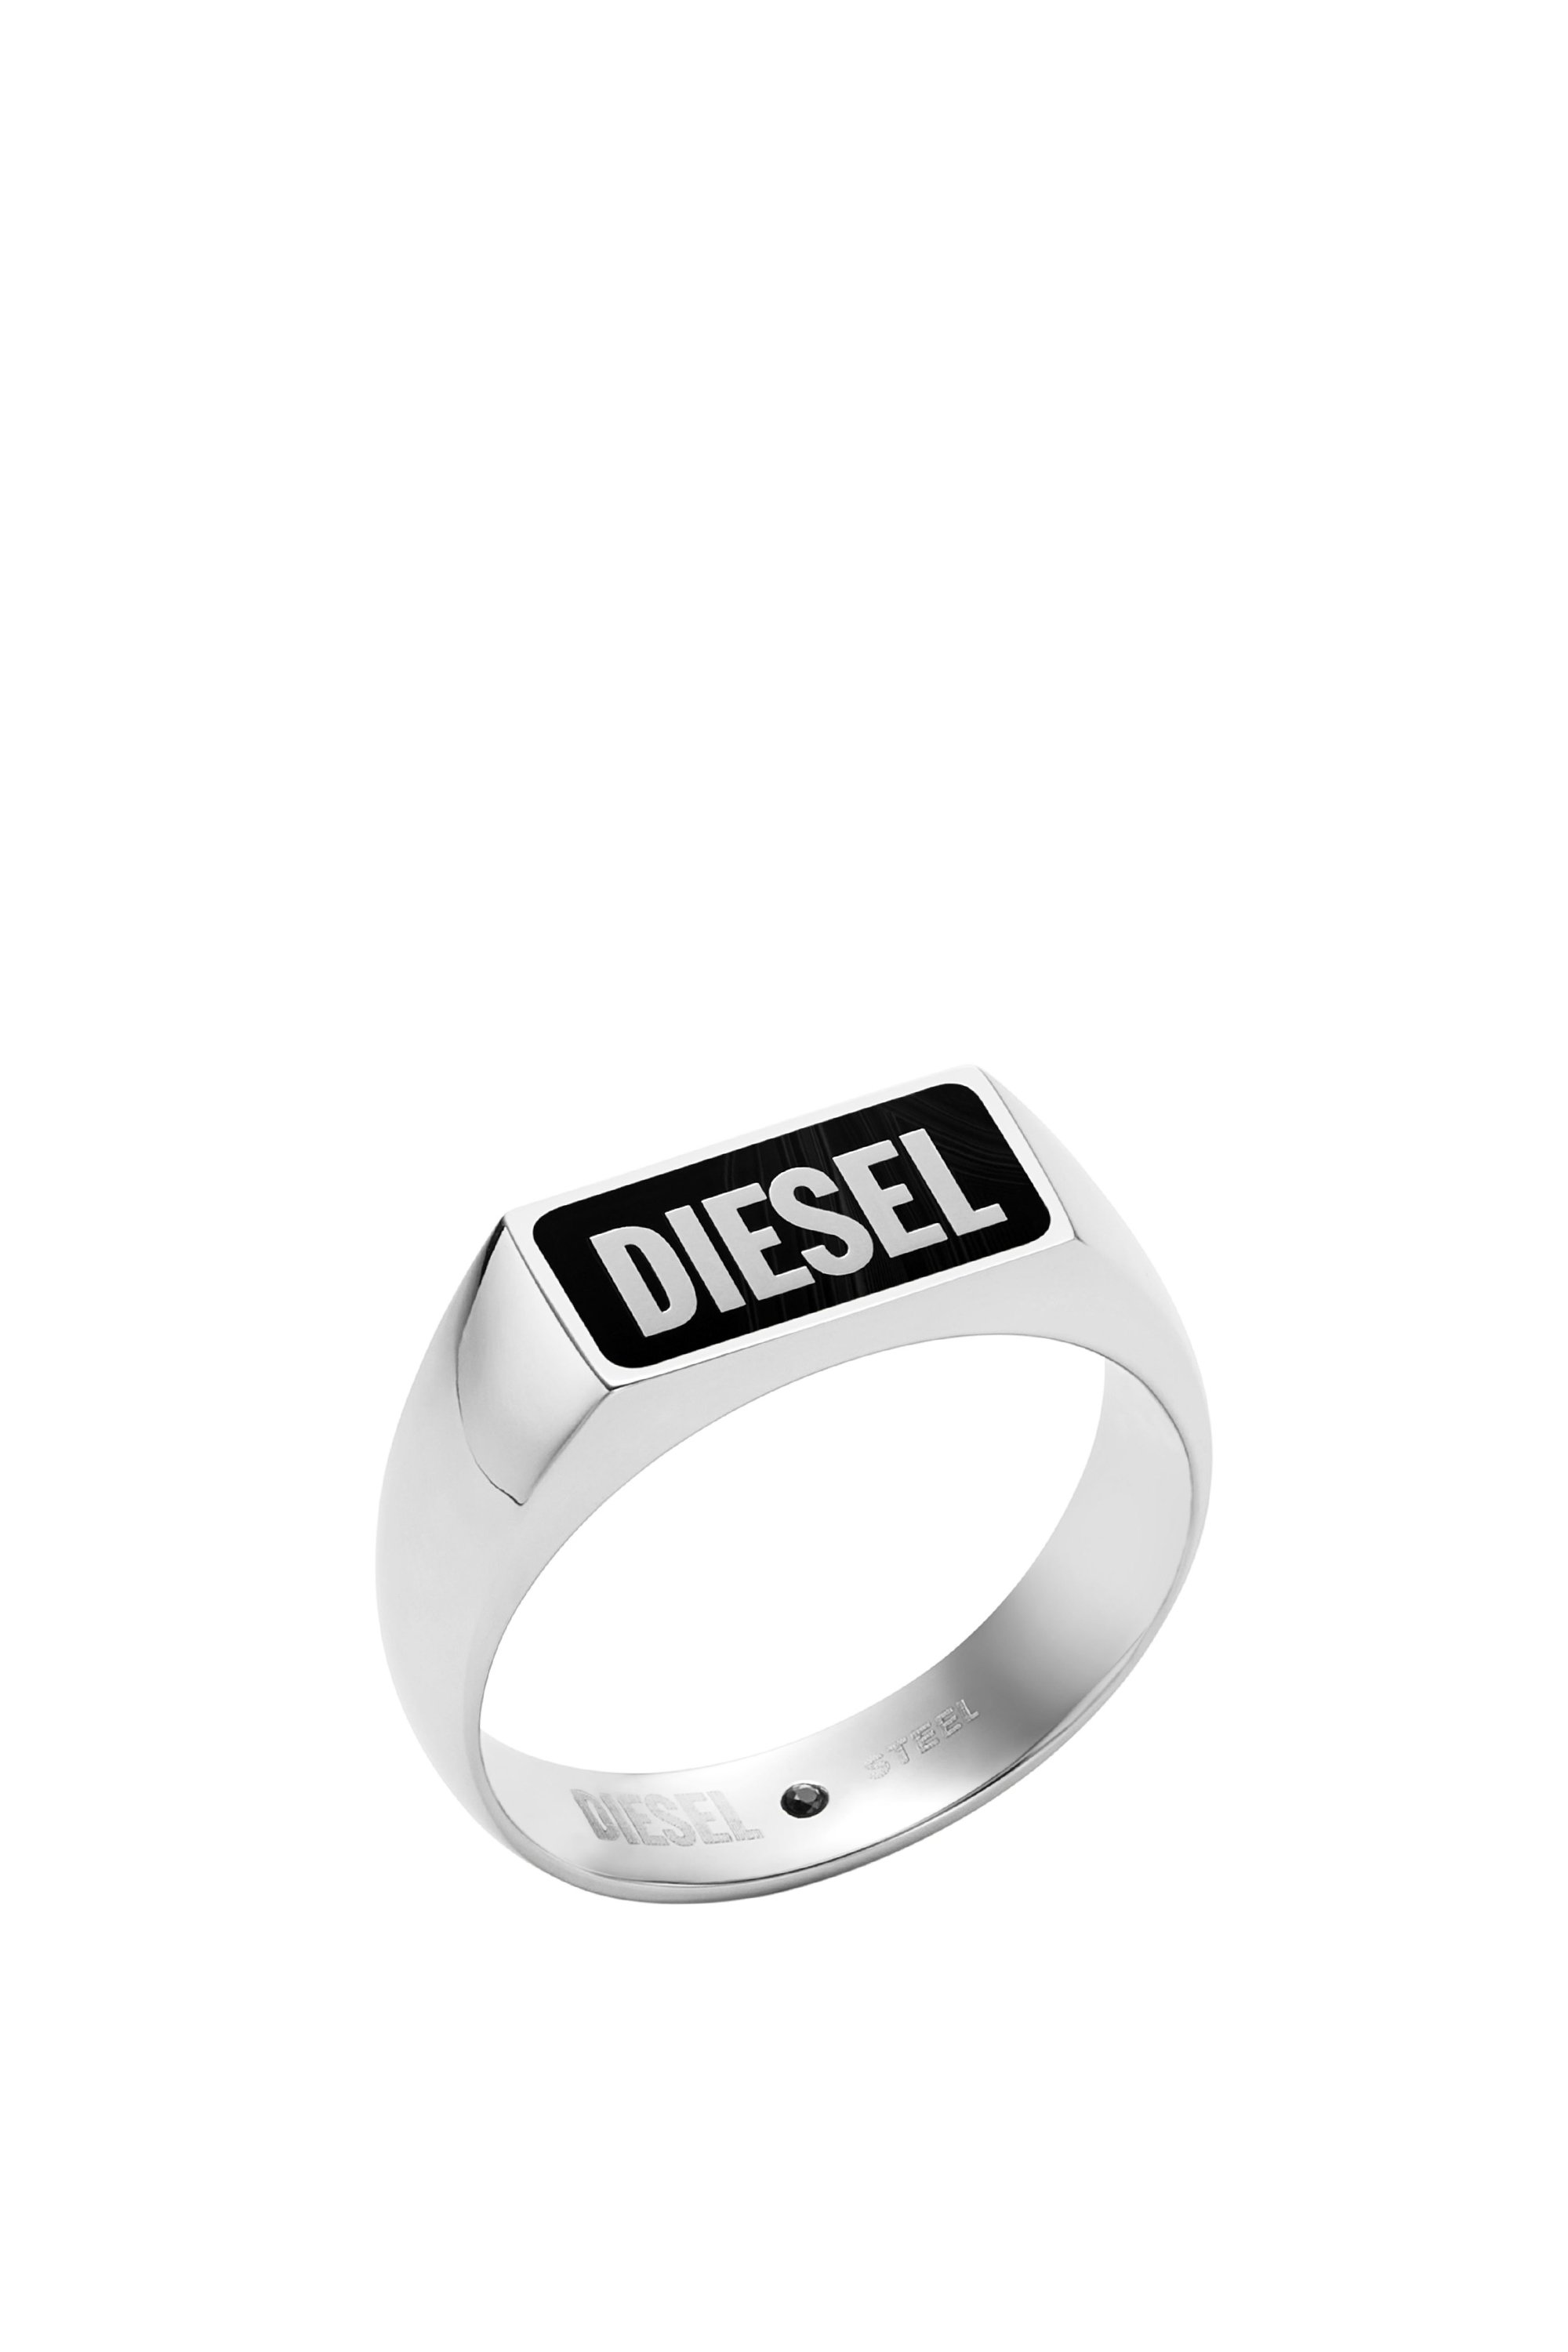 Diesel - DX1512, Silver - Image 1